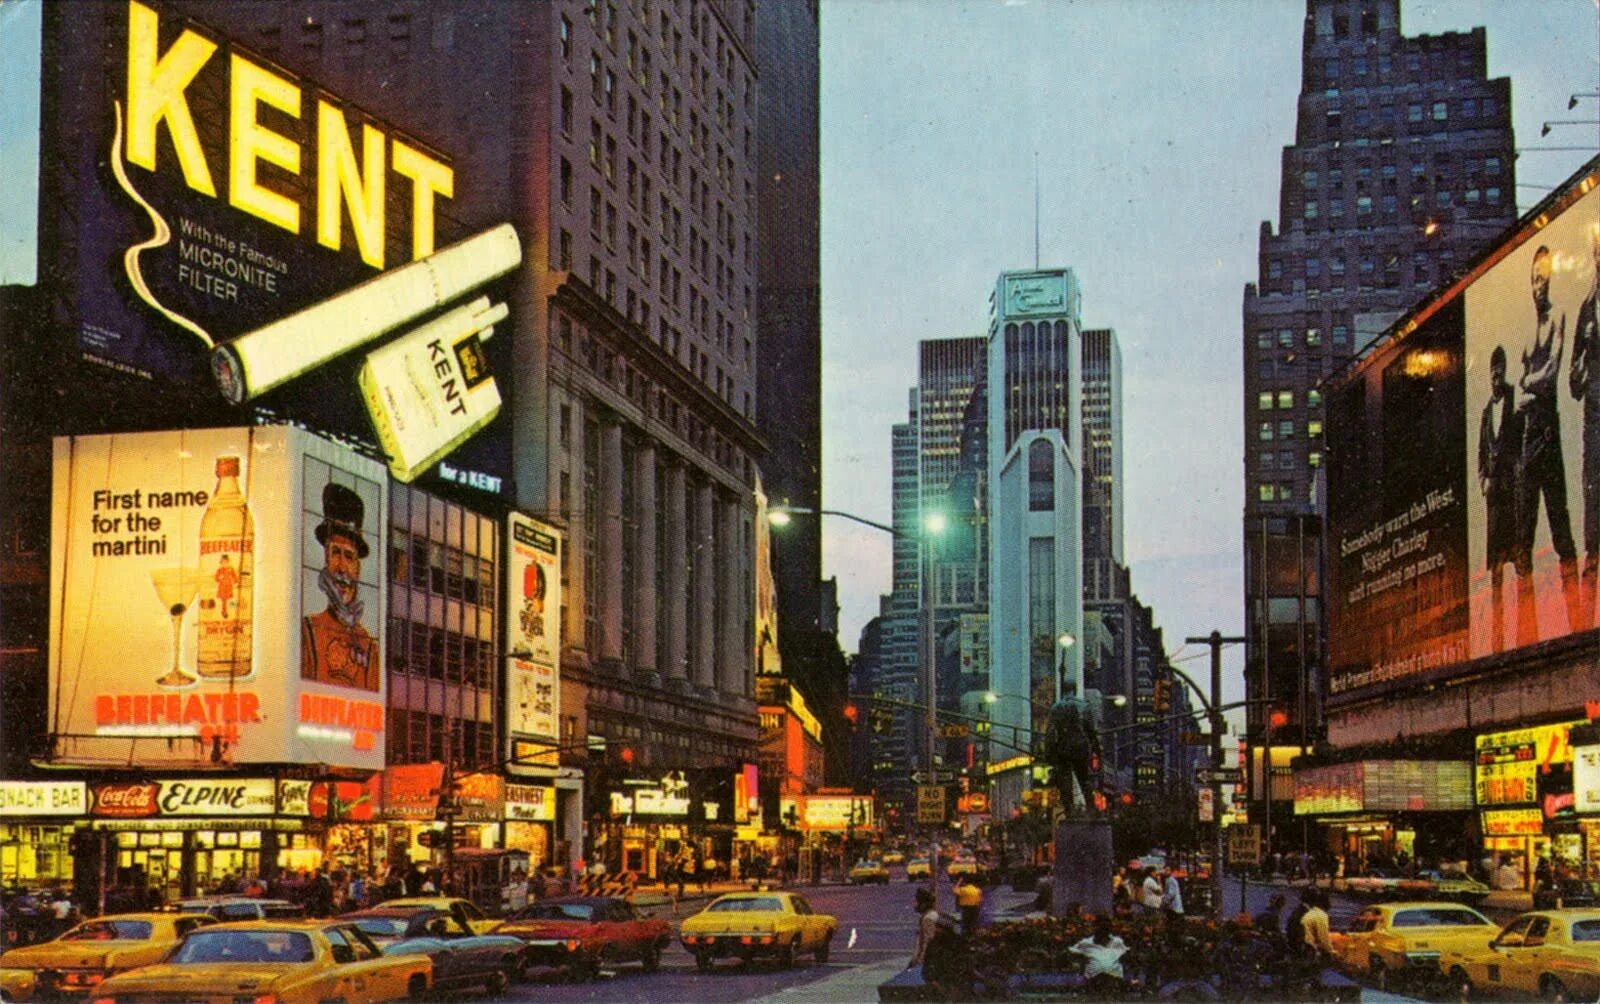 They live in new york. Нью-Йорк Таймс сквер 1972. Нью-Йорк Бродвей 1960. Нью Йорк Таймс 1960. Таймс сквер 1960.